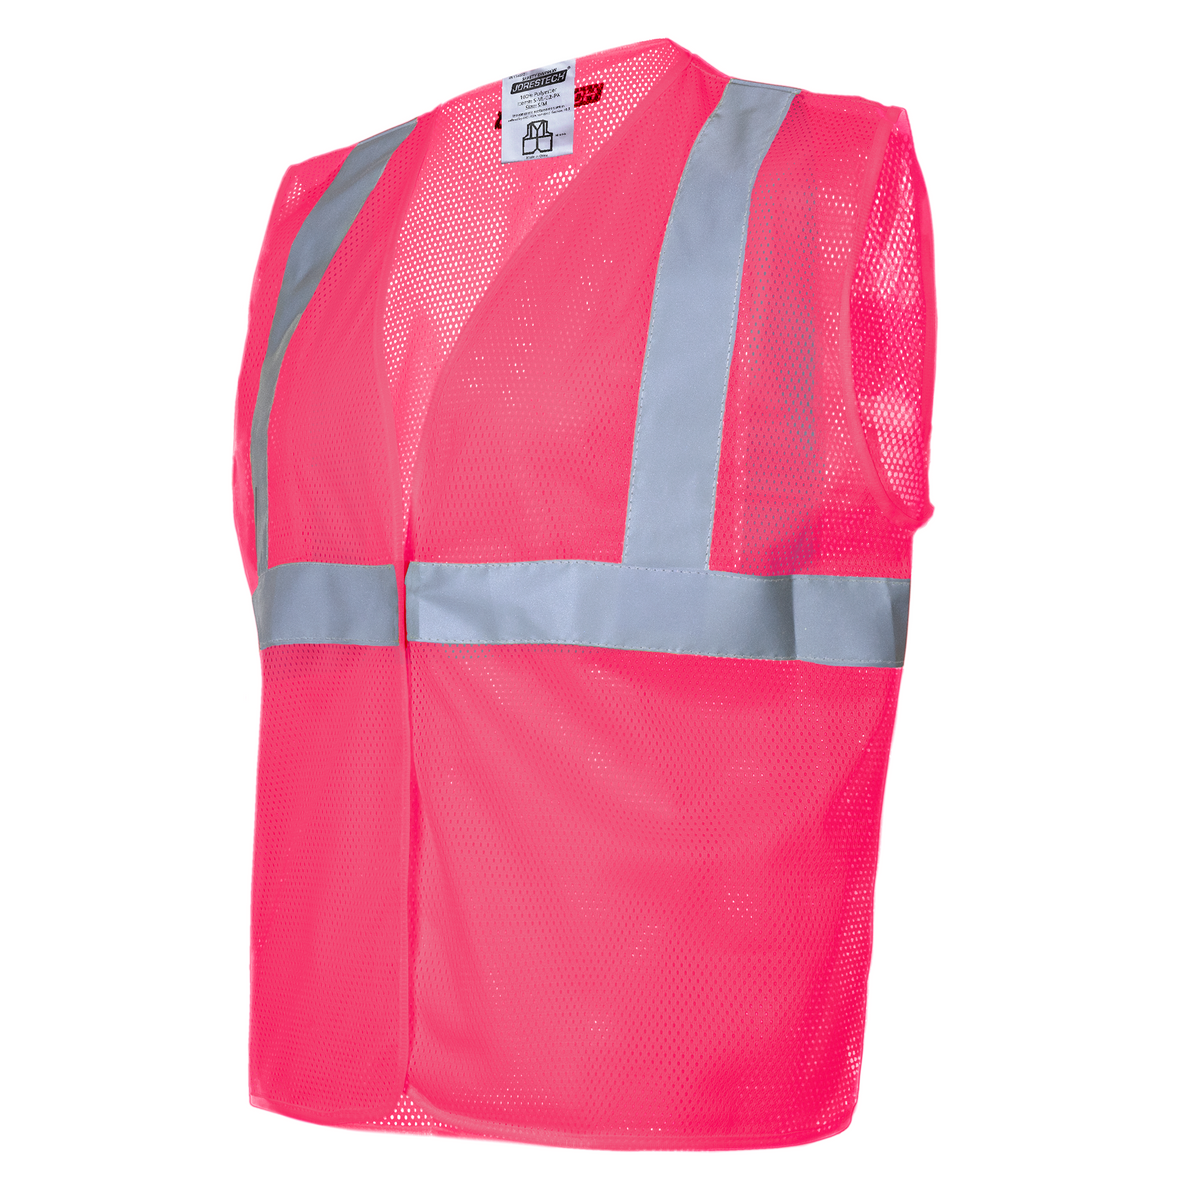 Hi-Vis Mesh Safety Vest with 2